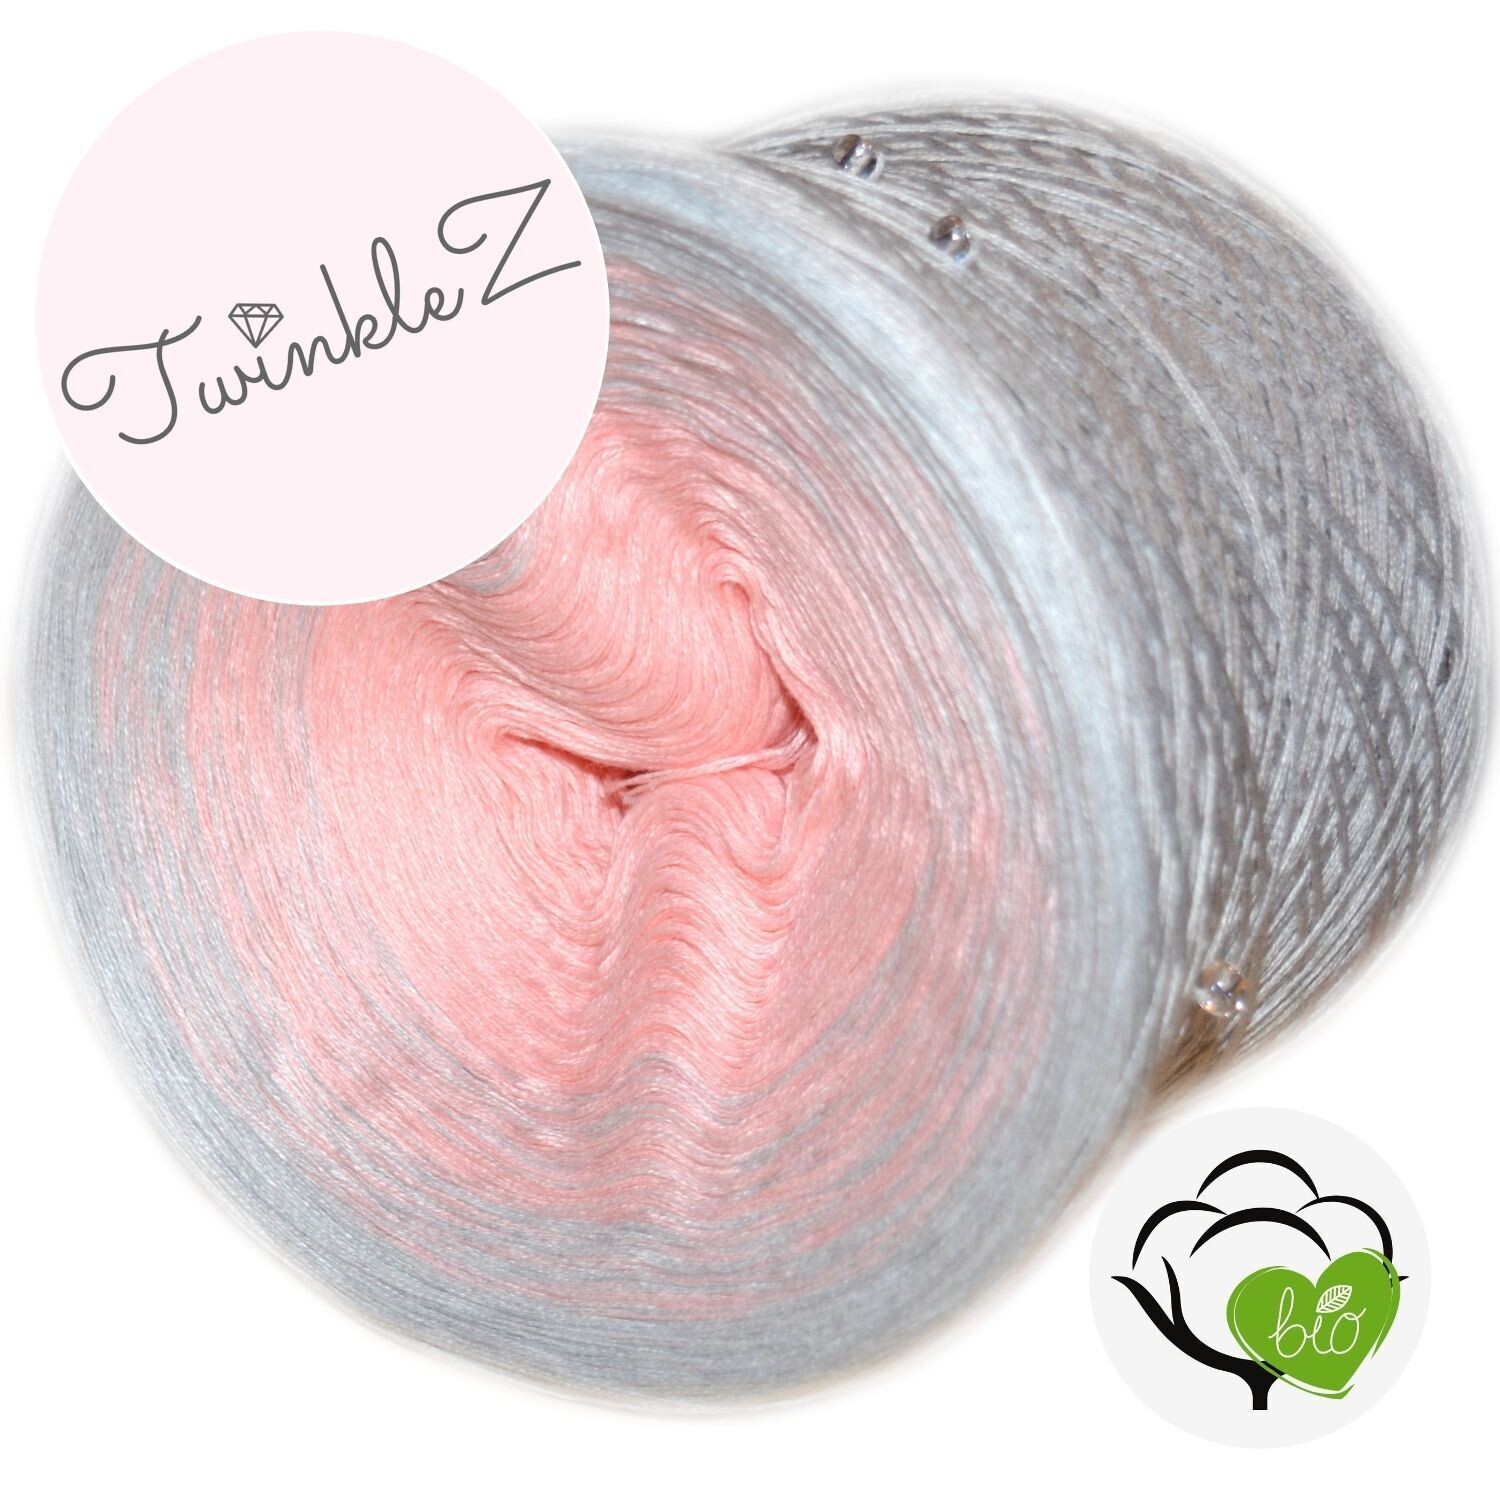 Woolpedia® TwinkleZ Bio Wunschverlauf mit Perlen (100% Baumwolle)